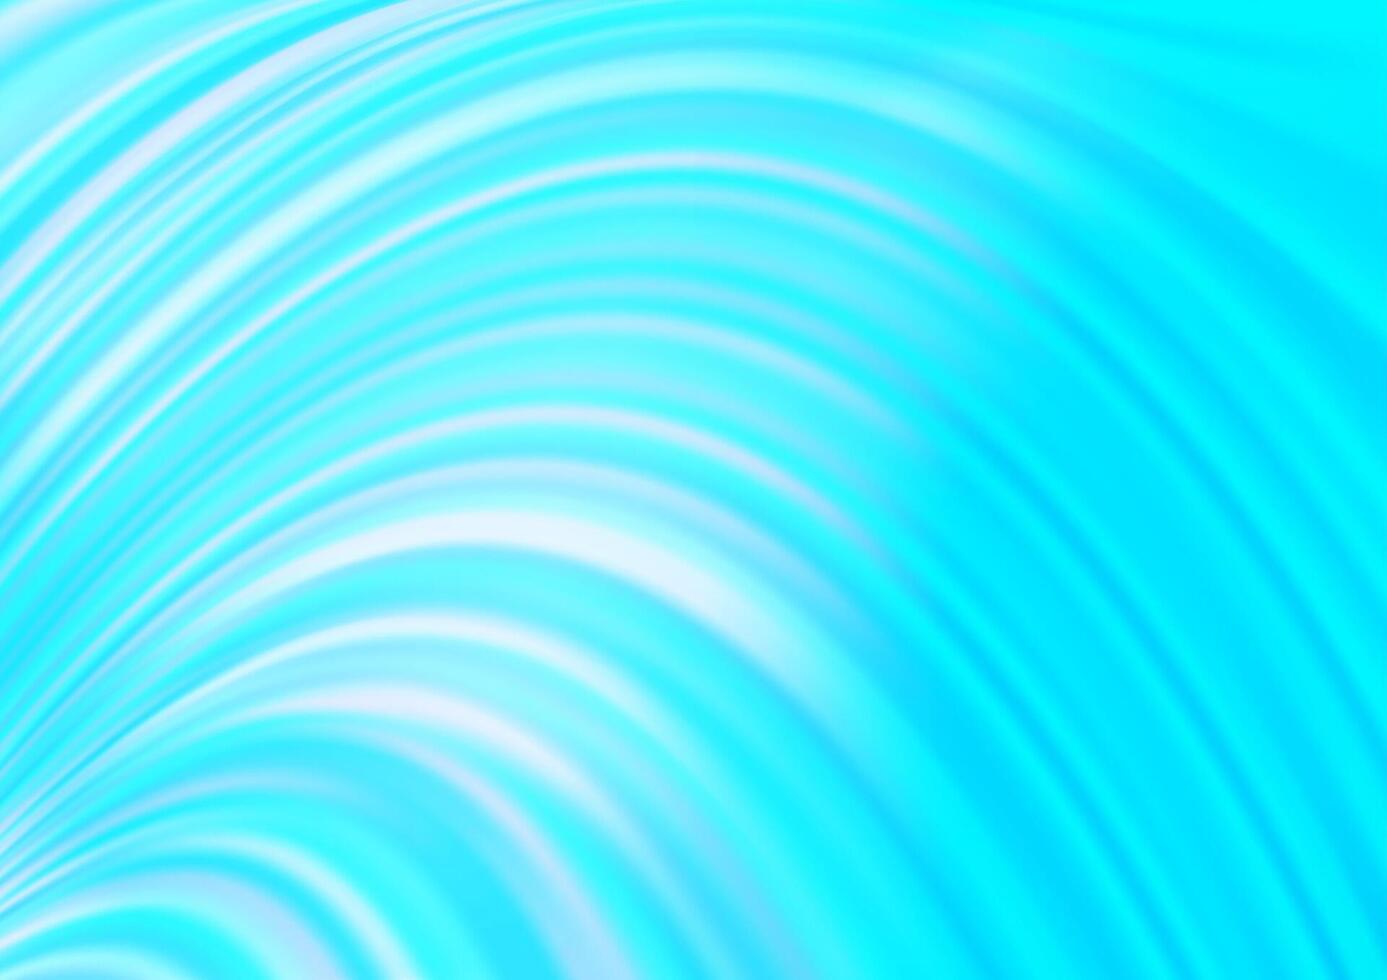 modello vettoriale blu chiaro con cerchi curvi.